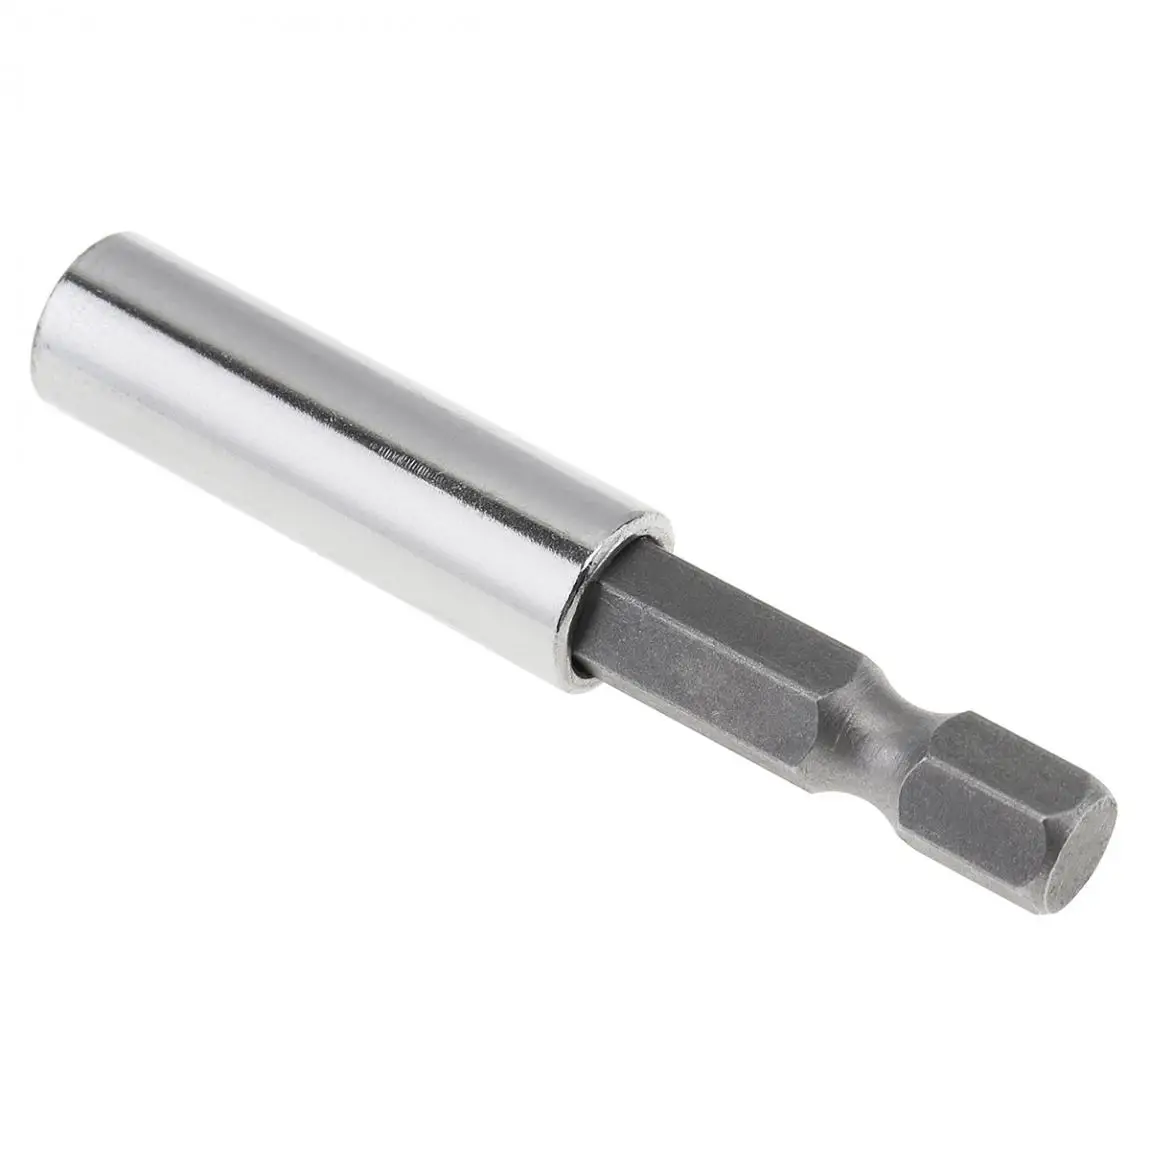 Screwdriver Socket Extension 58mm Hex Shank Screwdriver Bit Extension Rod with Magnetic Extension Positioning Rod